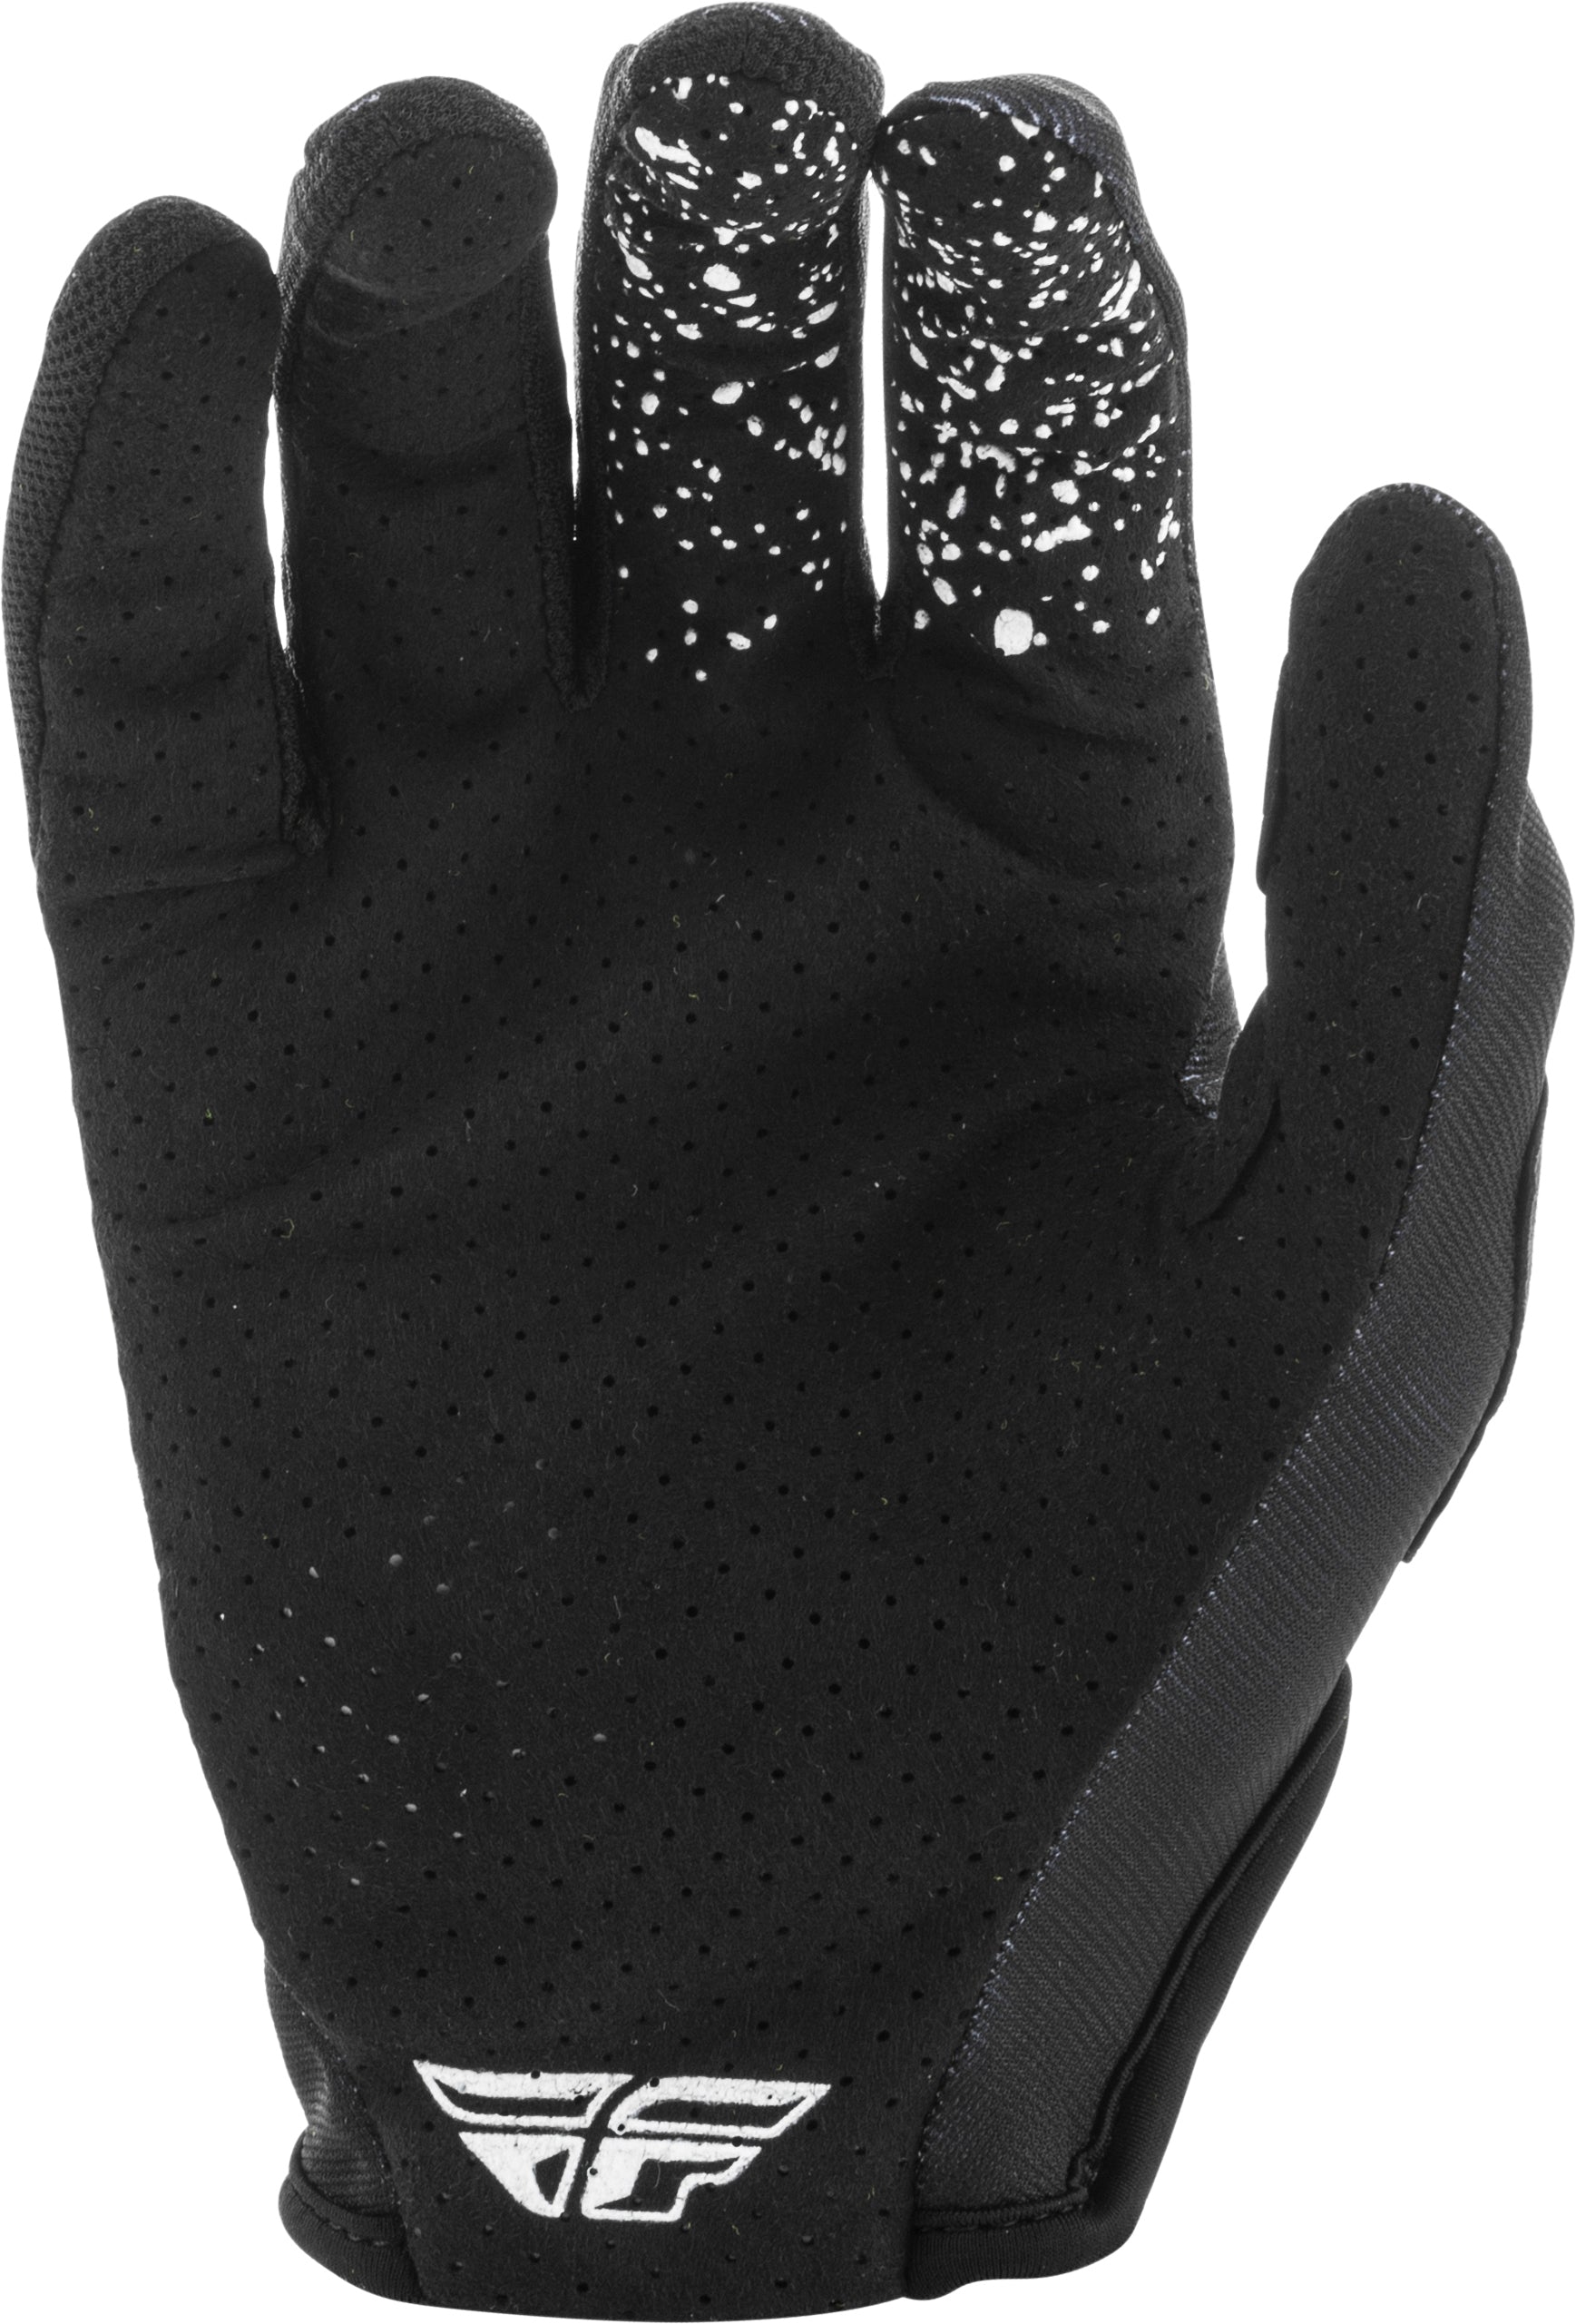 Lite Gloves Black/White Sz 10